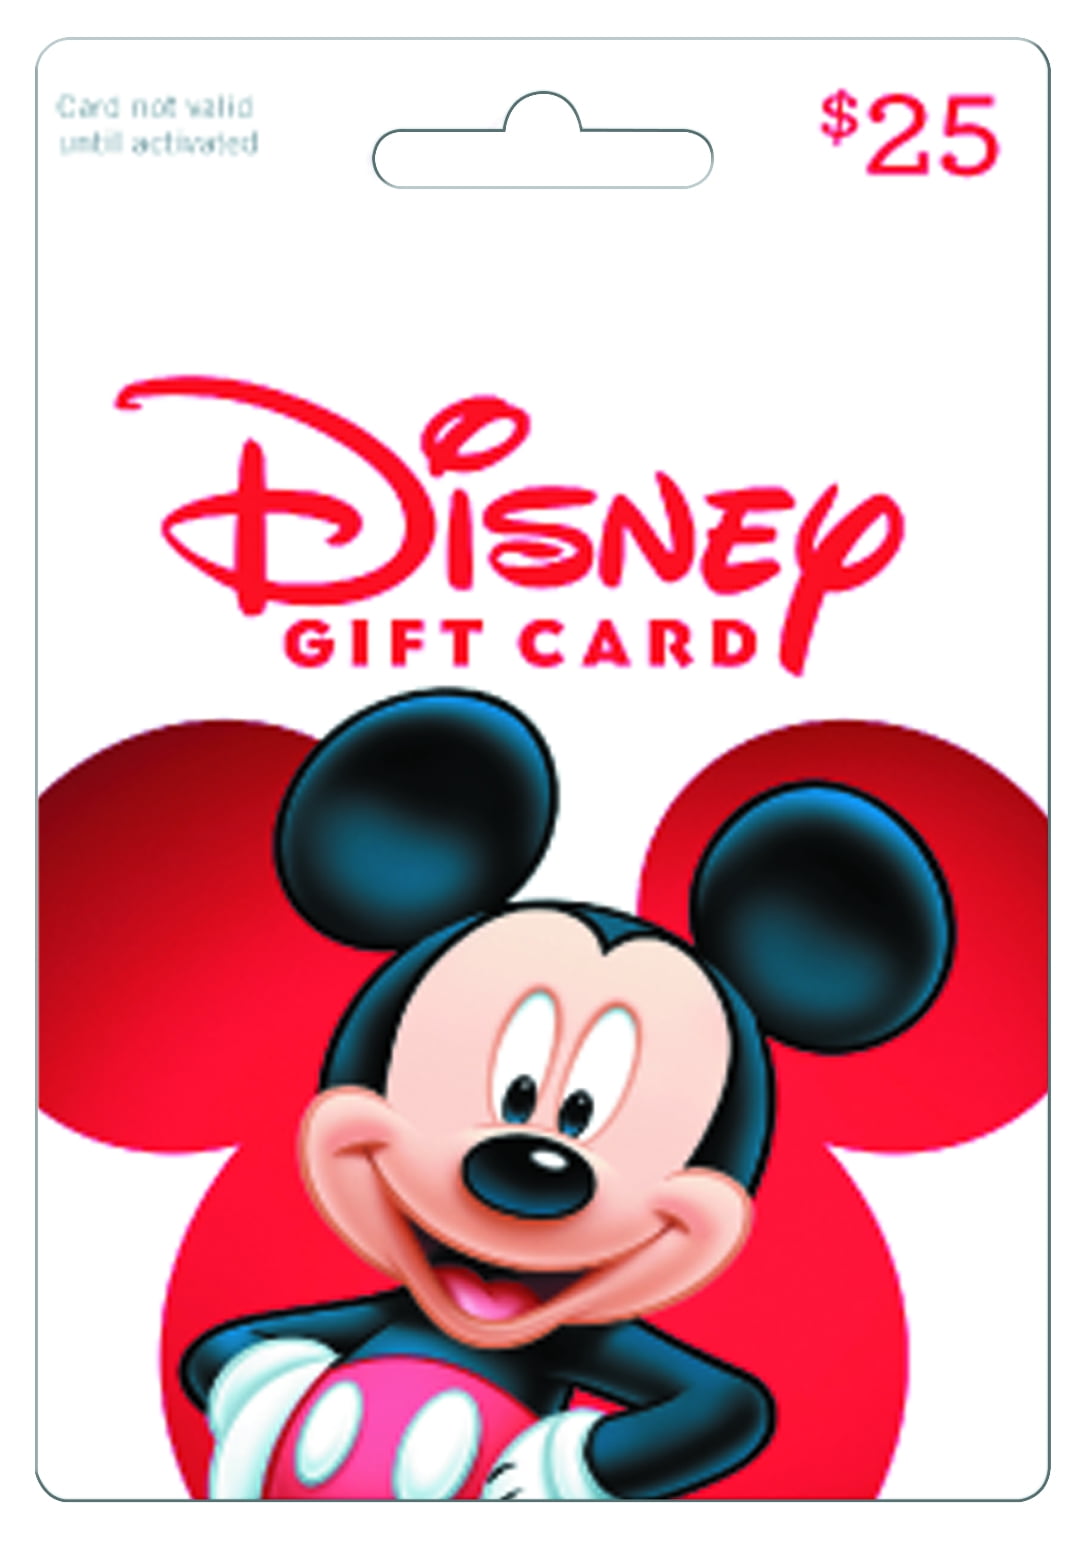 Disneypluscomredeemcard